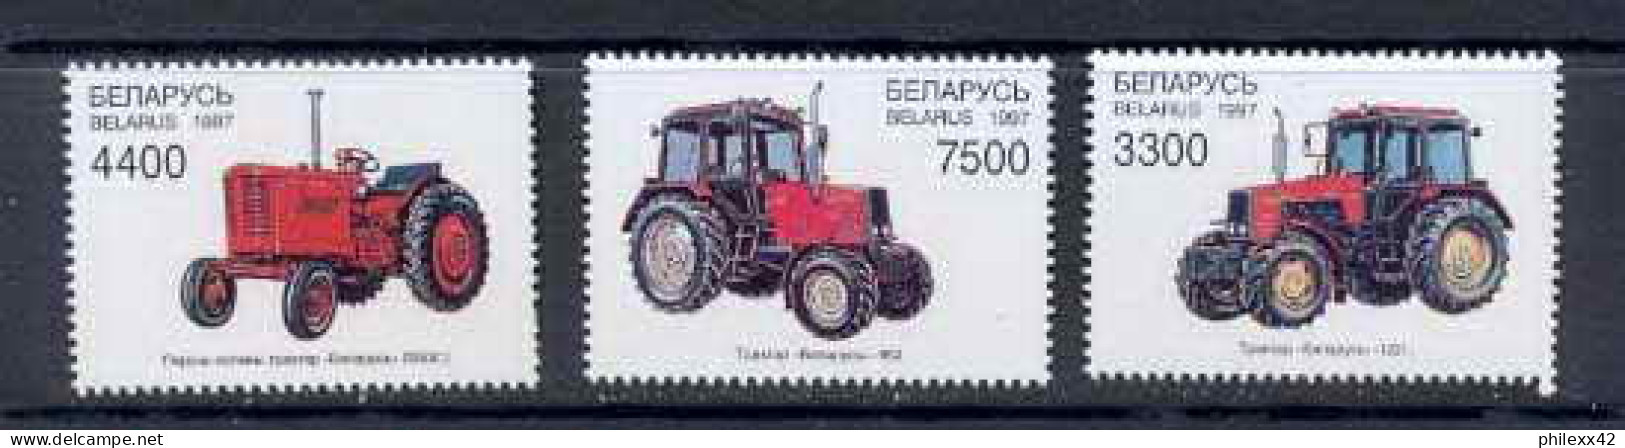 116 Biélorussie (Belarus) N°217 / 220 Tracteur Voiture (Cars Car Automobiles Voitures) Cote 4.50 - Camions